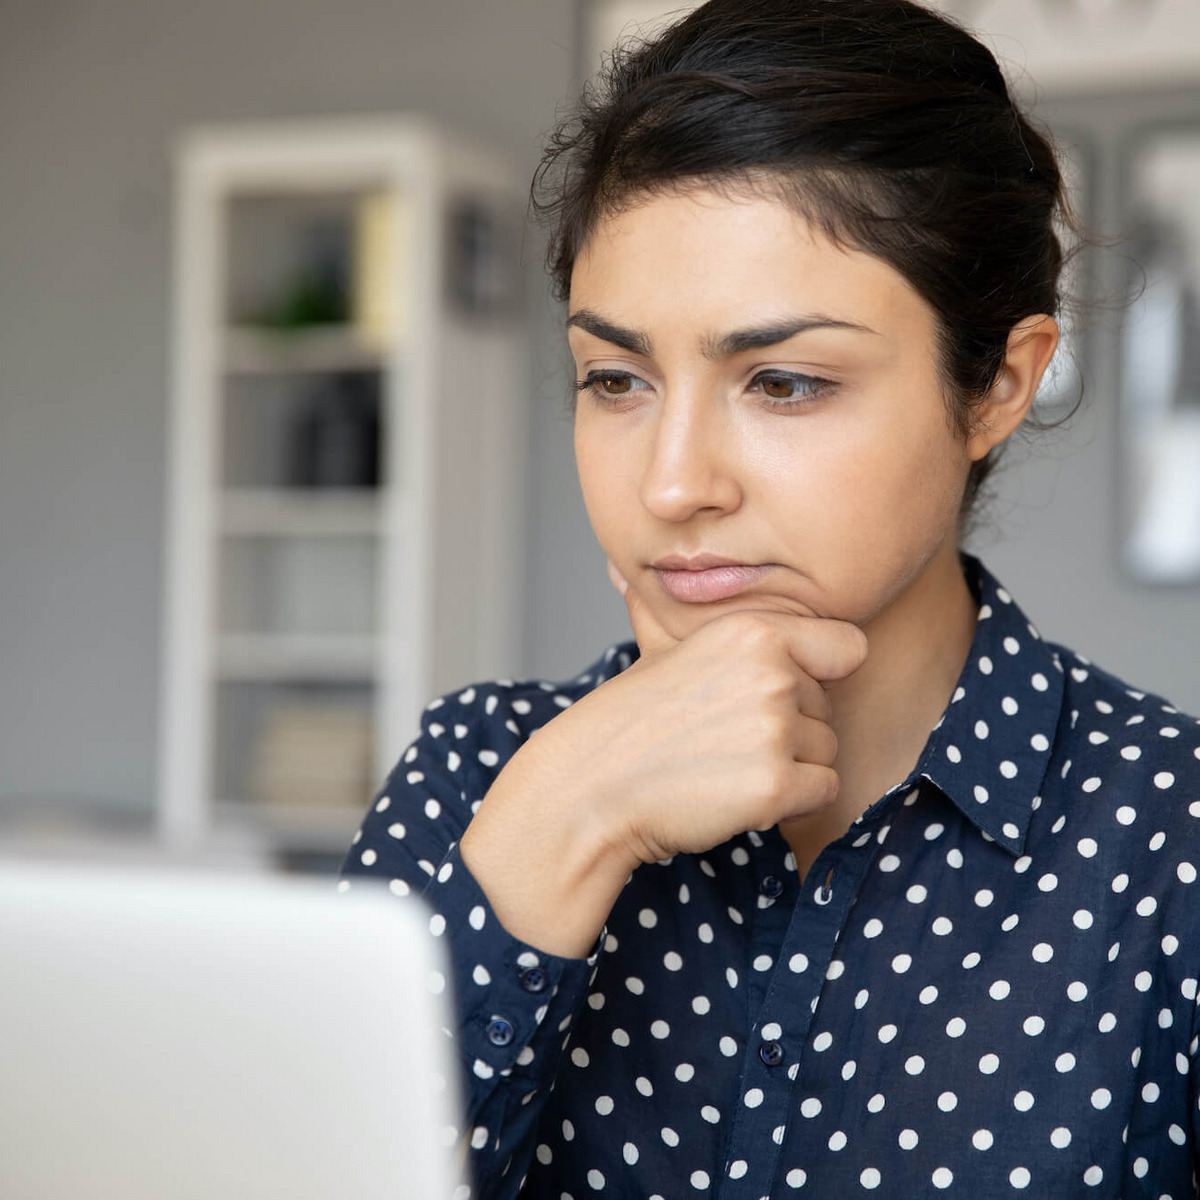 Eine Frau in gepunkteter Bluse sitzt vor einem Laptop und hat einen unsicheren, nachdenklichen Gesichtsausdruck.